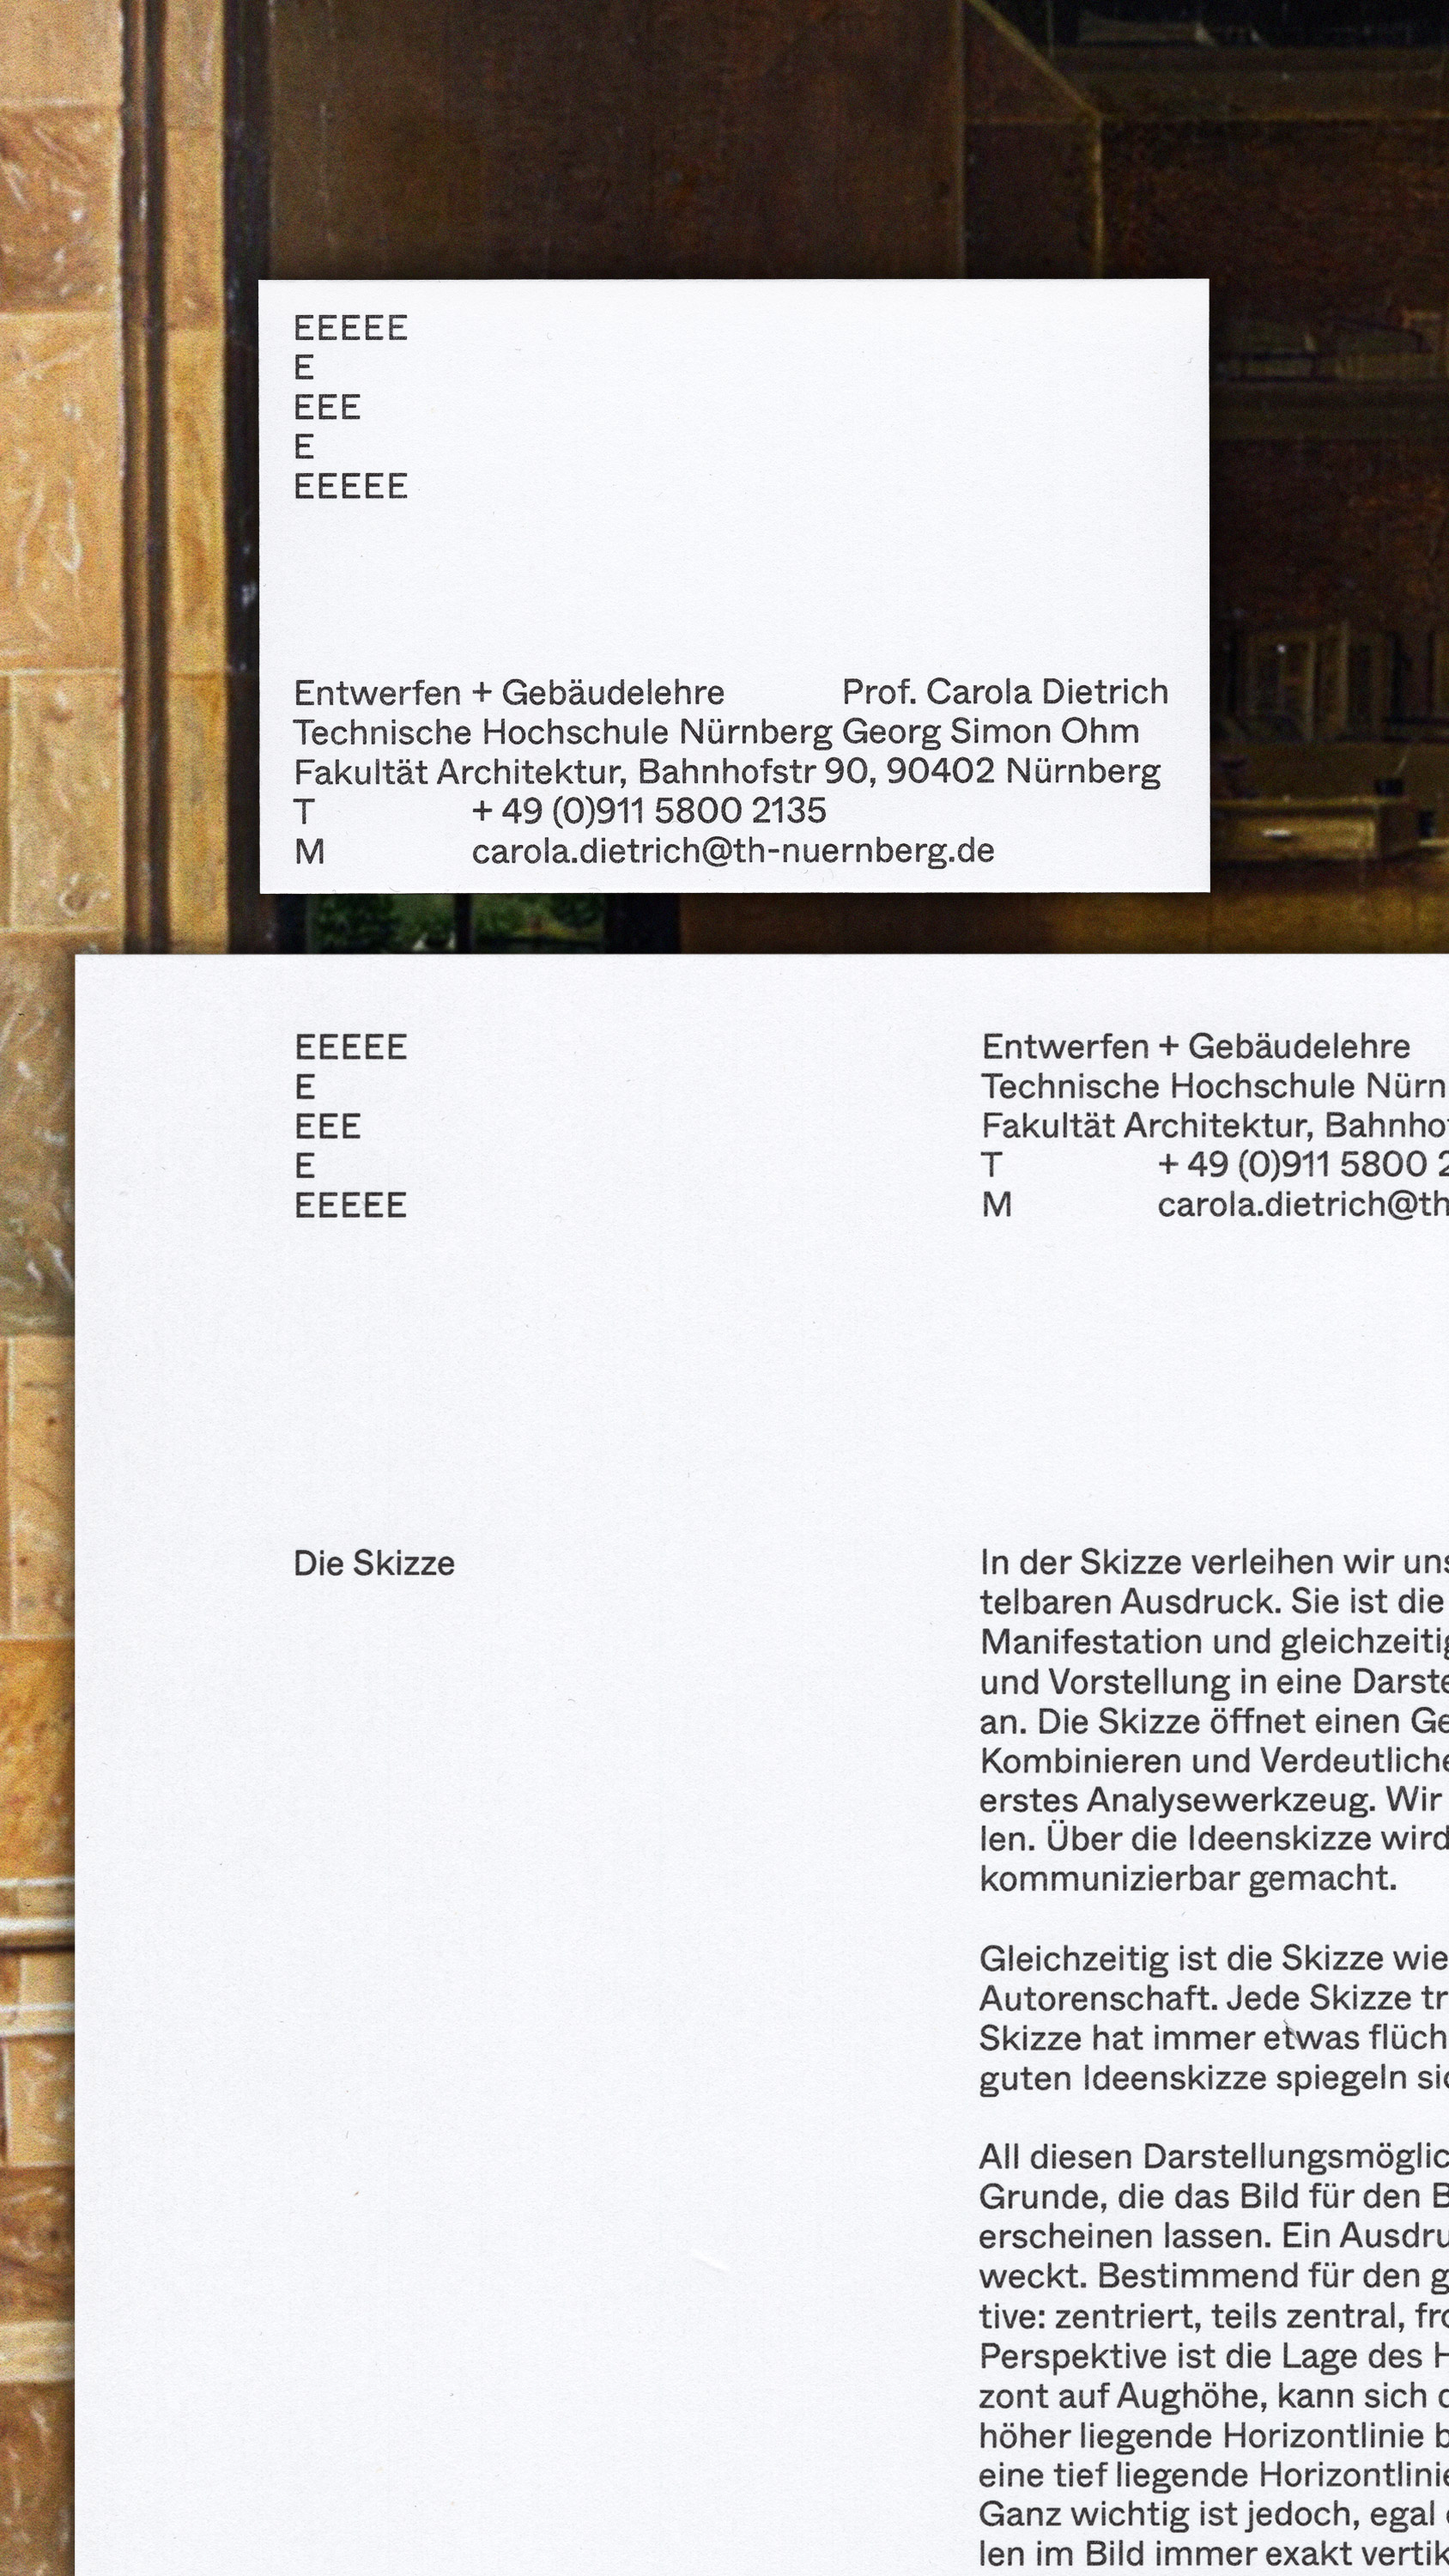 TH Nürnberg, Entwerfen und Gebäudelehre, Visuelle Identität